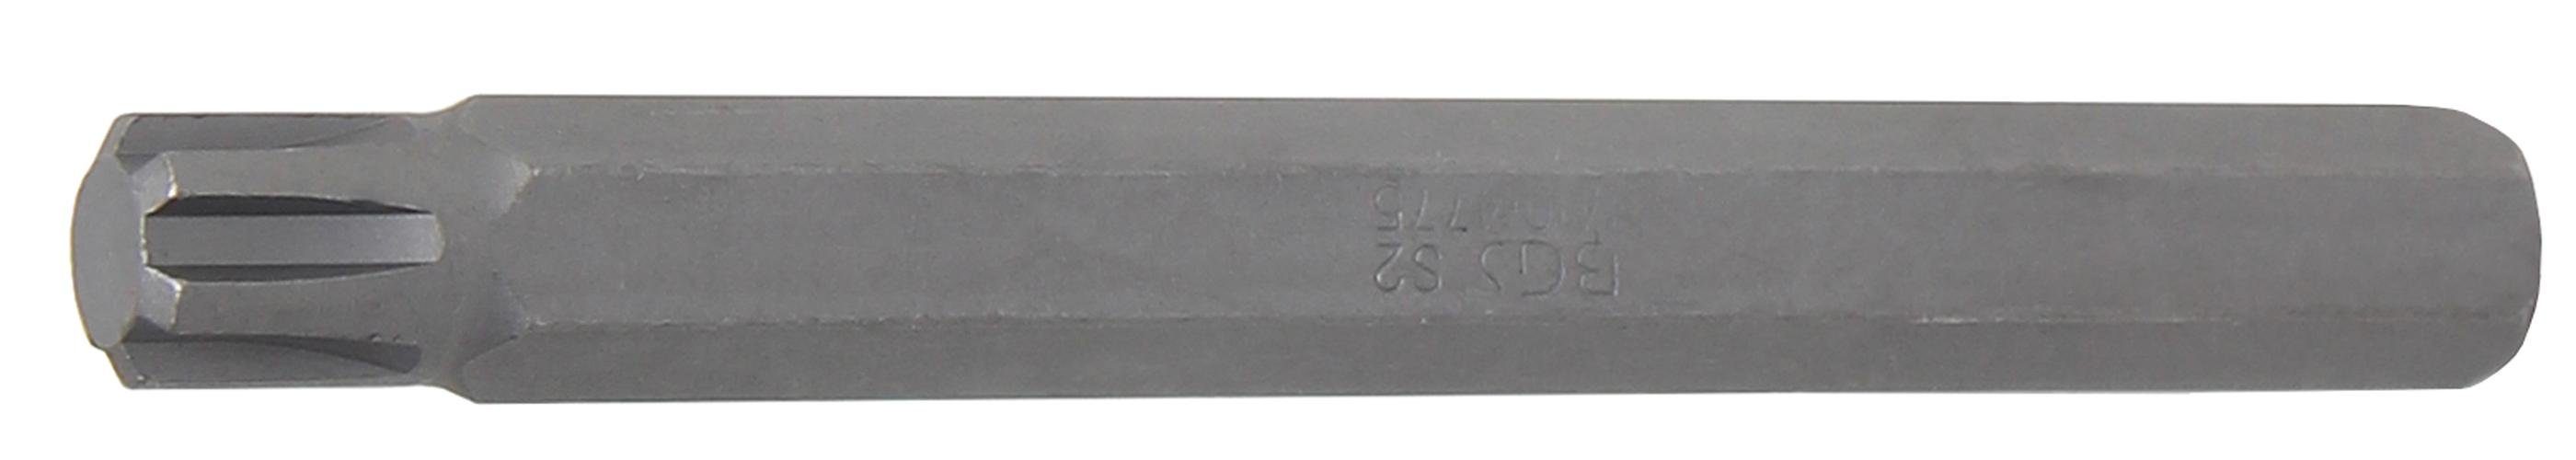 BGS technic Bit-Schraubendreher Bit, Länge 100 mm, Antrieb Außensechskant 10 mm (3/8), Keil-Profil (für RIBE) M10